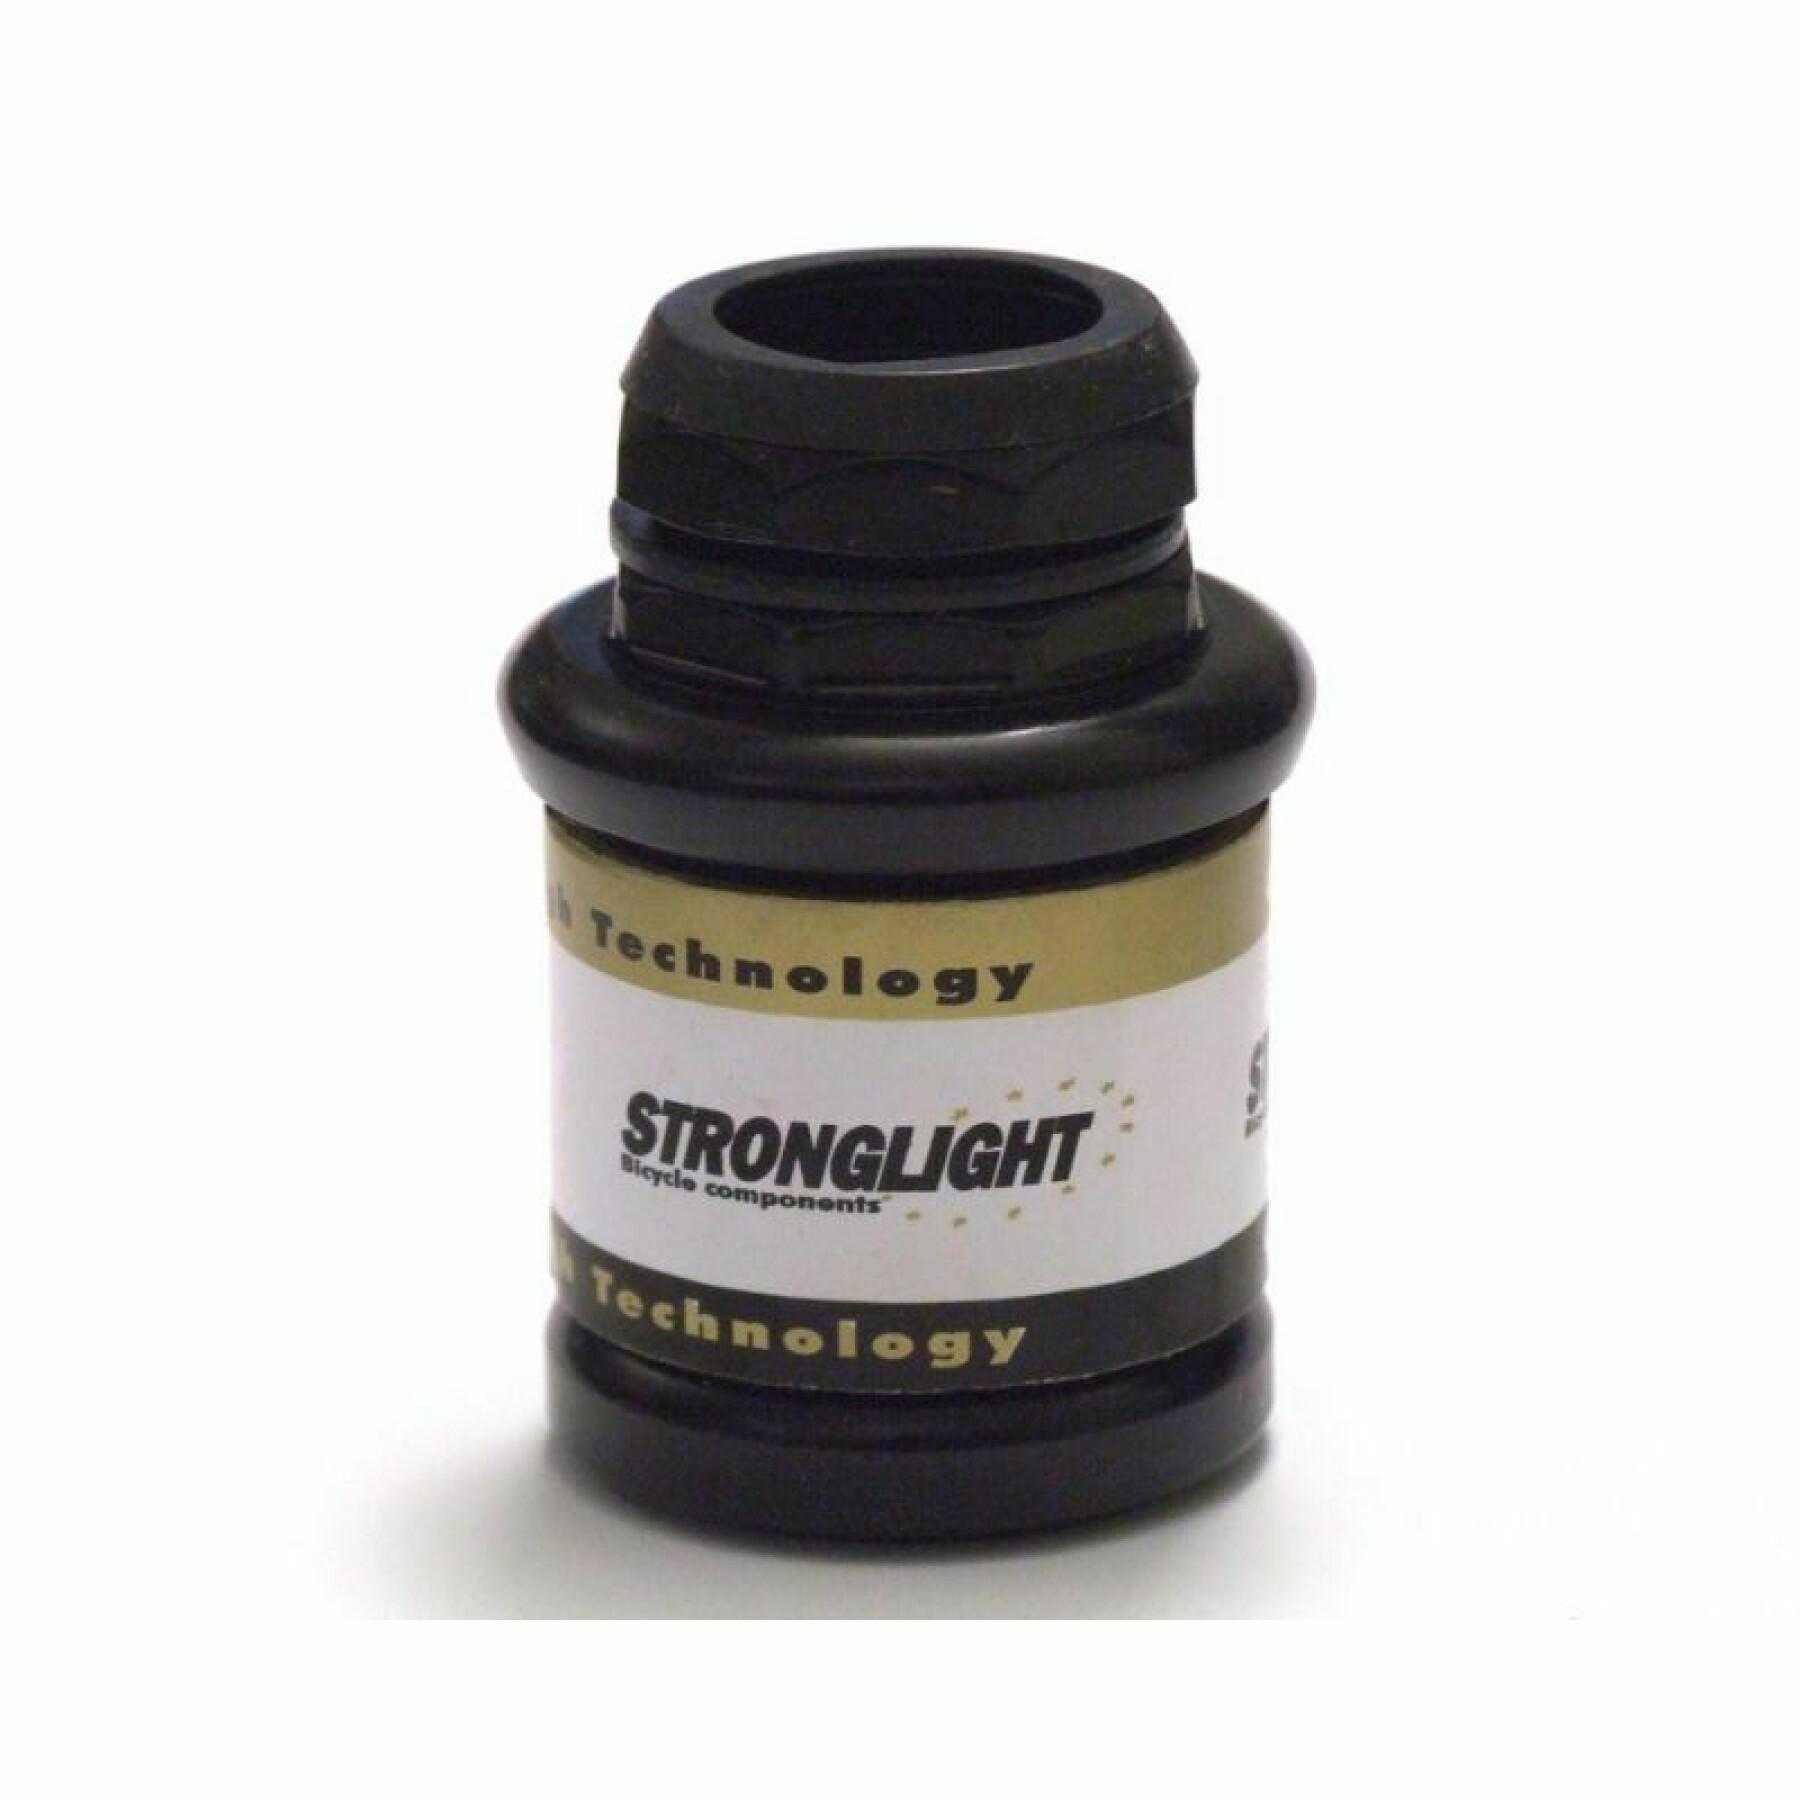 Steuersatz Stronglight a-9 steel